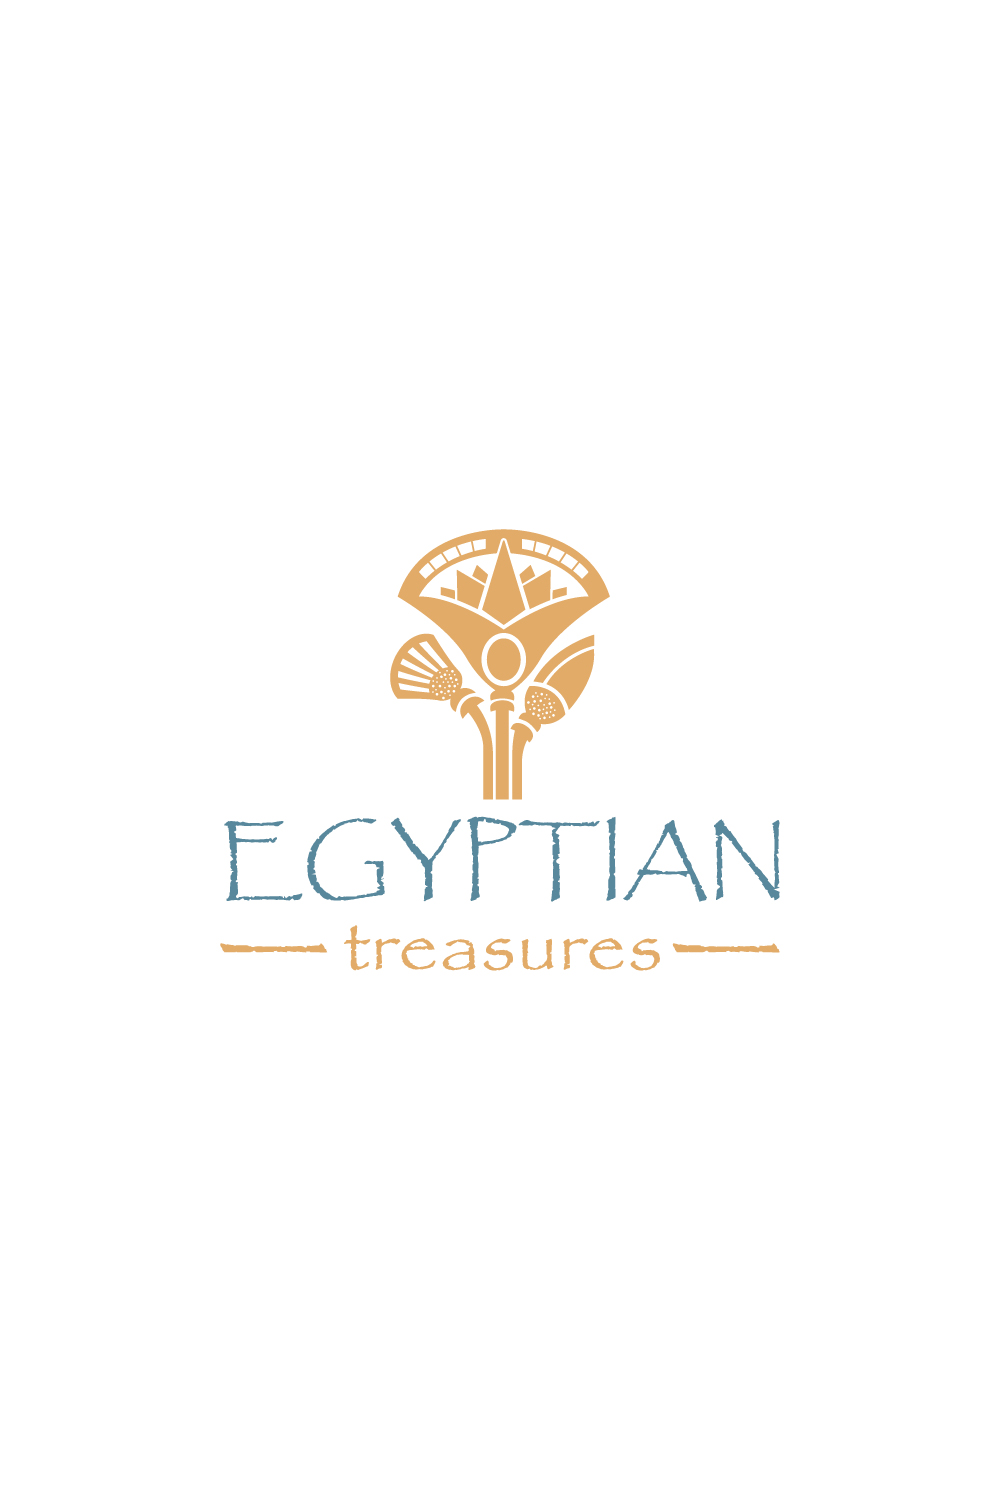 Egyptian treasures icon logo pinterest preview image.